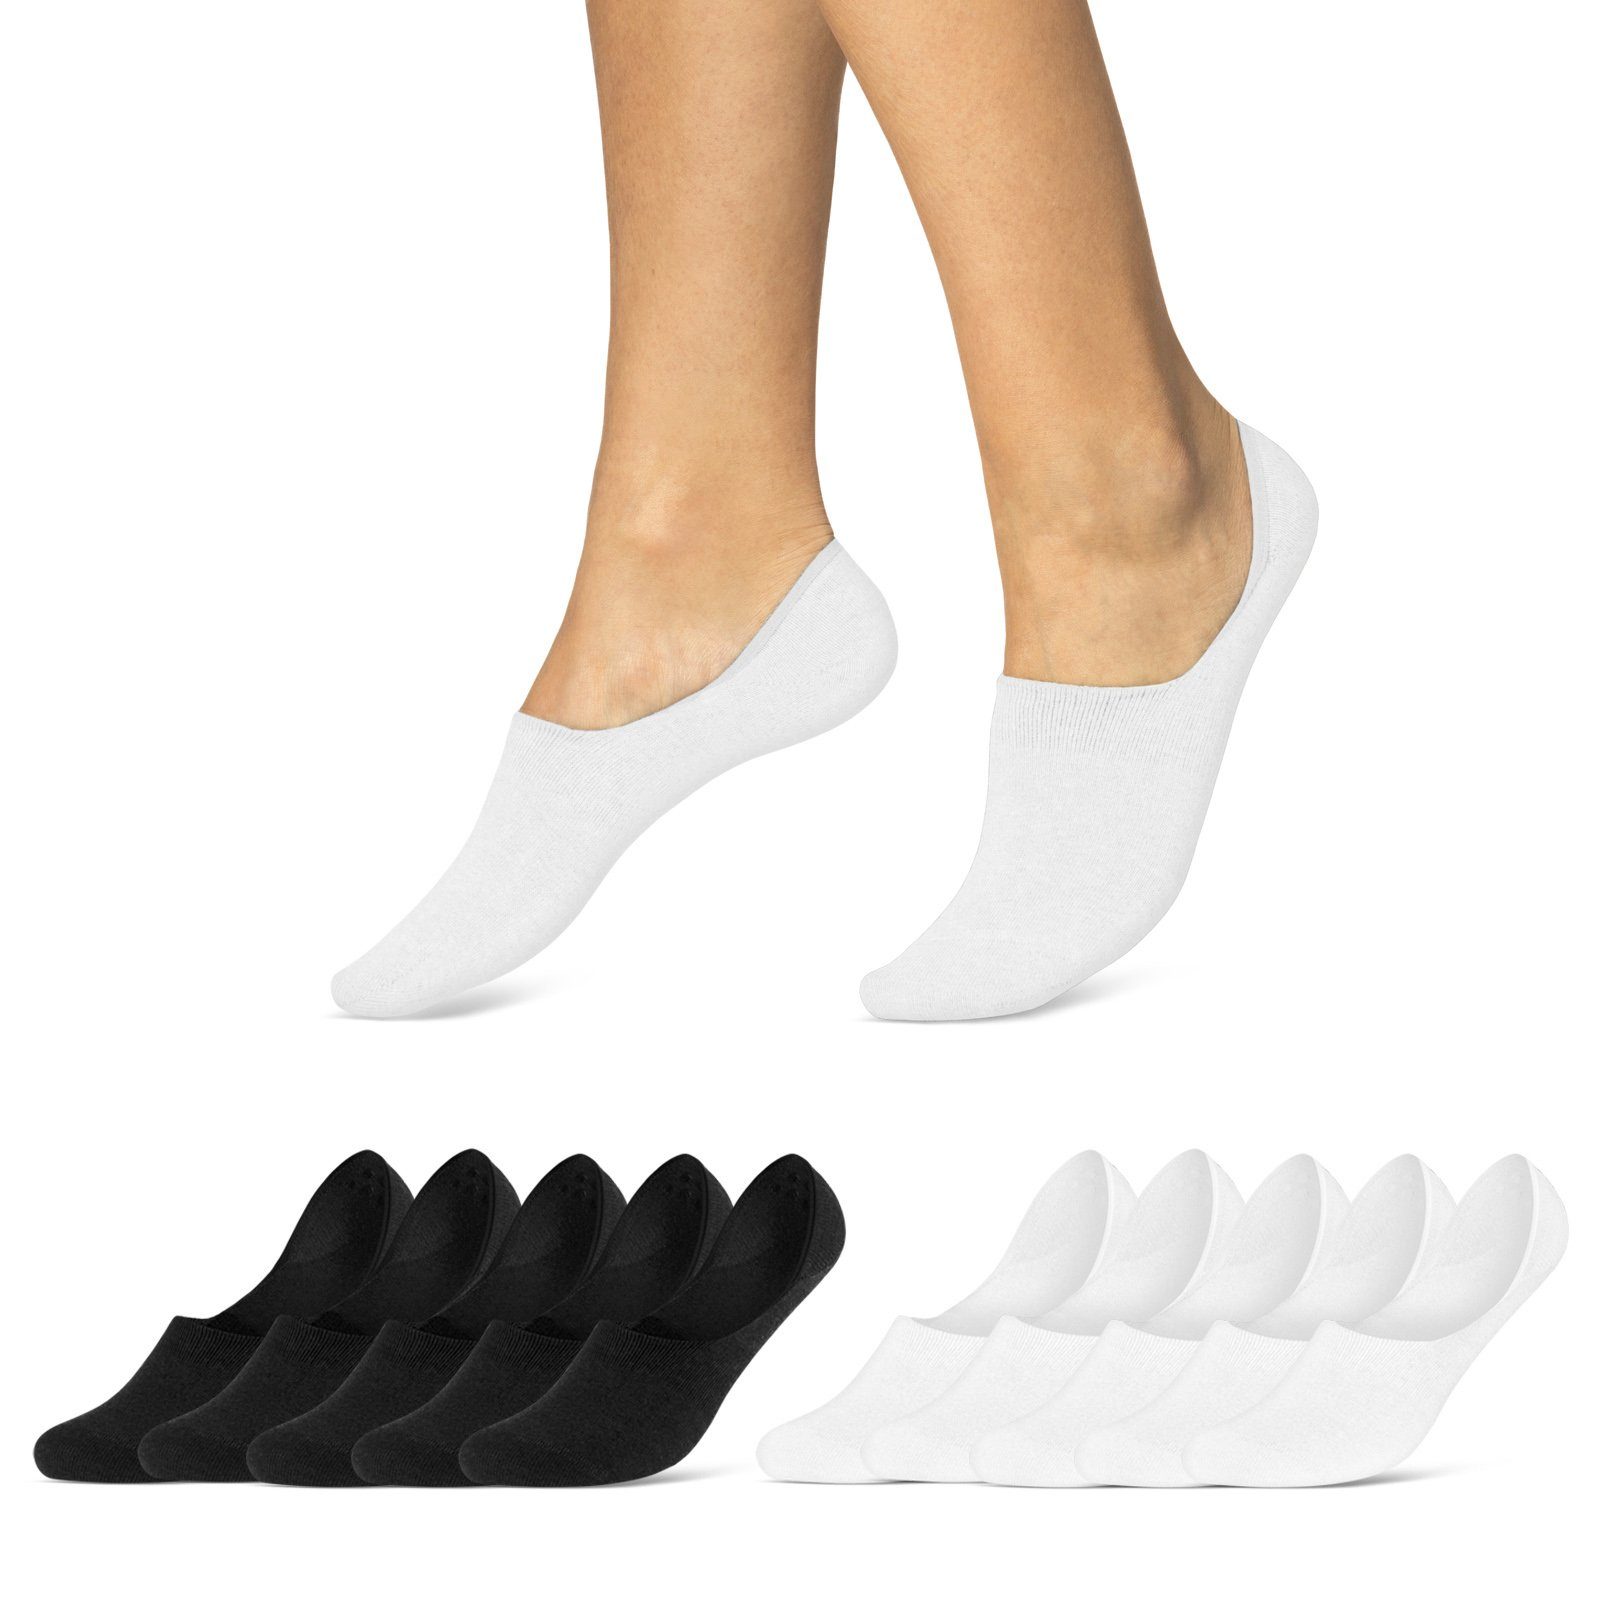 sockenkauf24 Füßlinge 10 Paar Premium Füßlinge aus gekämmter Baumwolle Damen & Herren (Schwarz/Weiß, 39-42) Sneaker Socken ohne drückende Naht (Exclusive Line) - 70103T WP